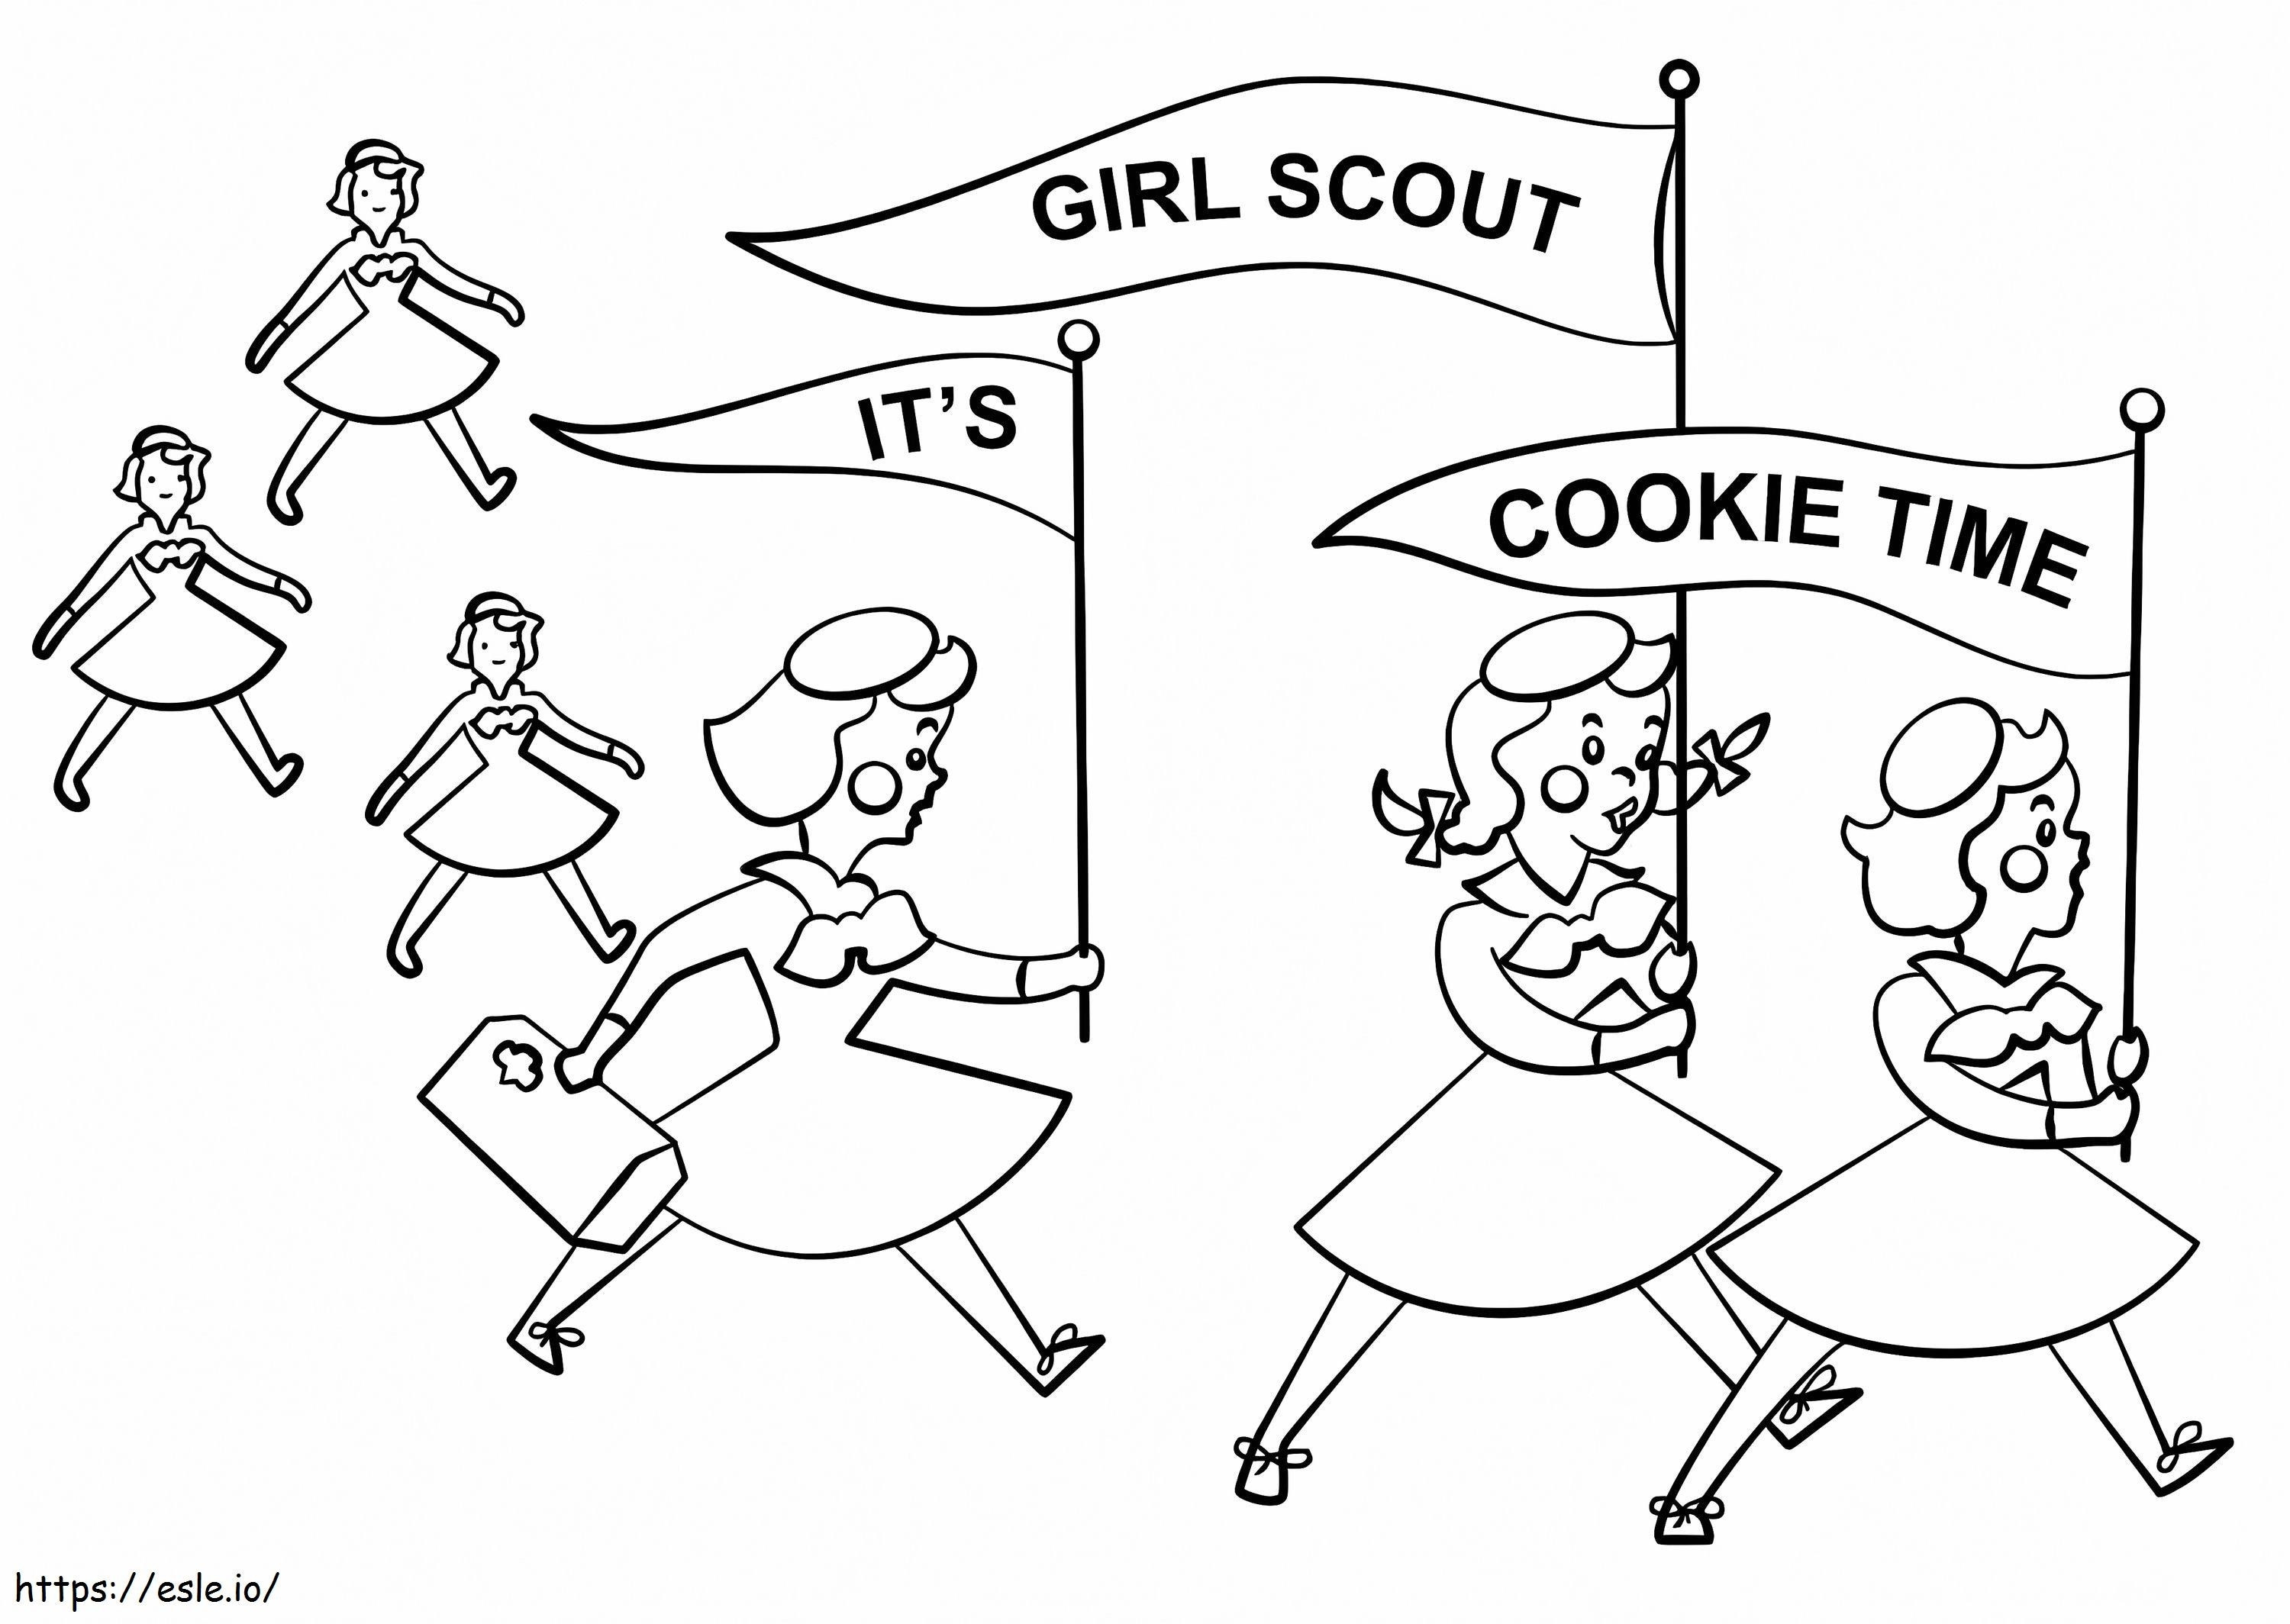 Girl Scout Cookie Time de colorat